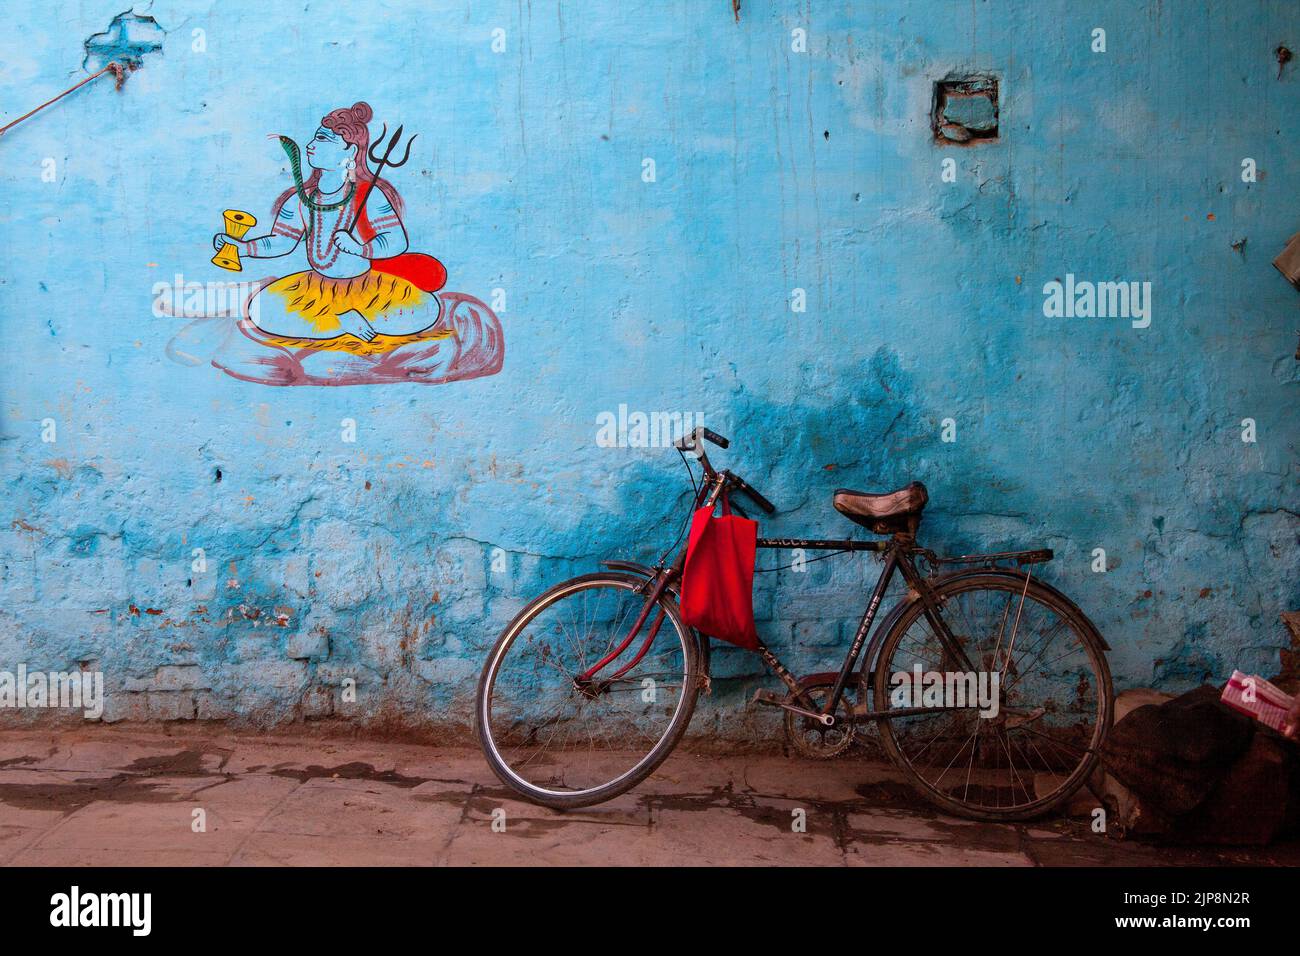 Bicicletta in piedi contro il muro con pittura Shiva, Varanasi, Banaras, Benaras, Kashi, Utttar Pradesh, India Foto Stock